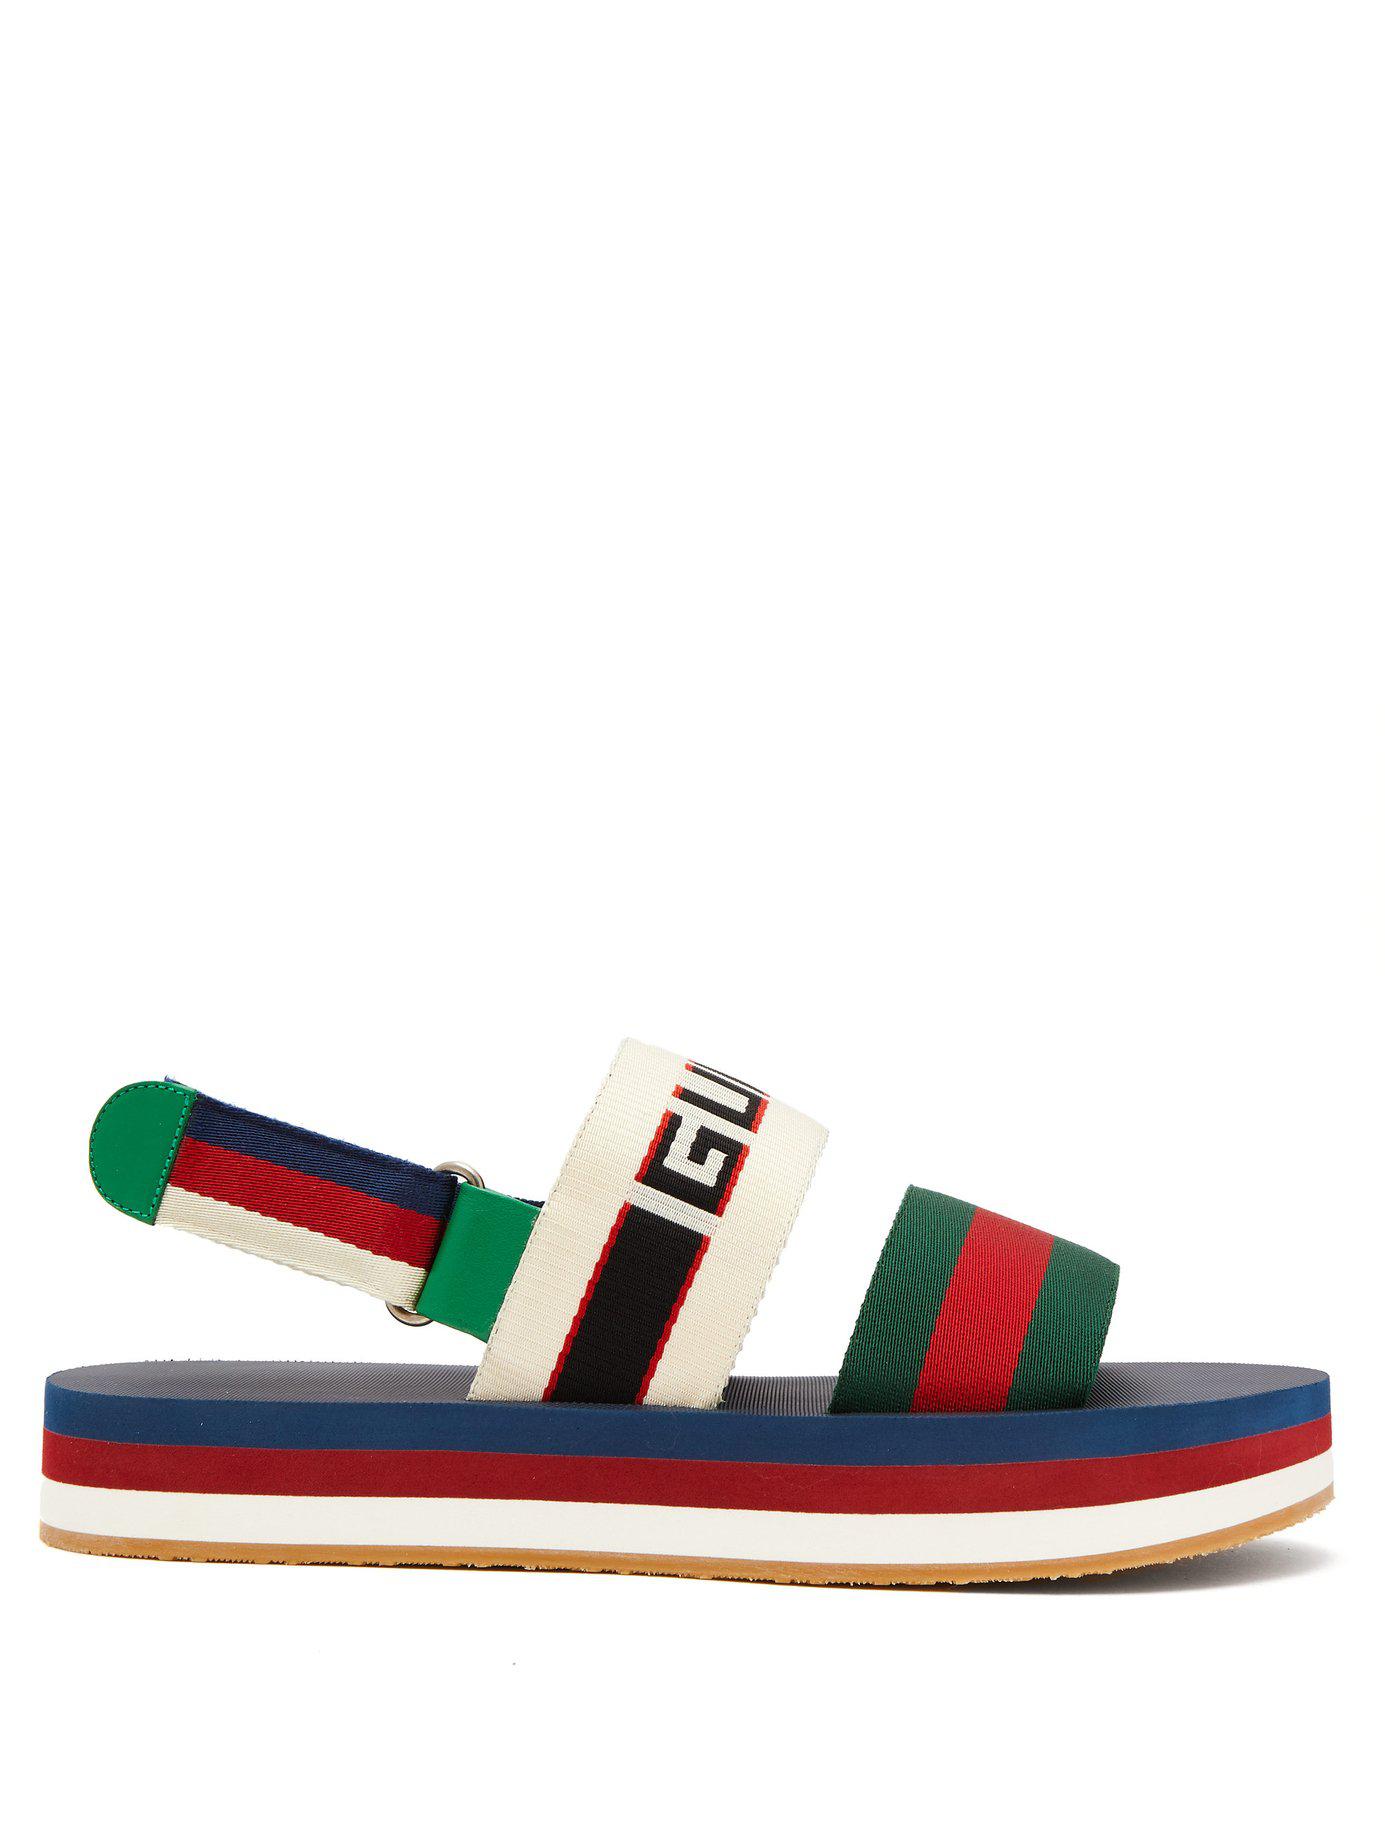 gucci multicolor bedlam sandals, OFF 70 